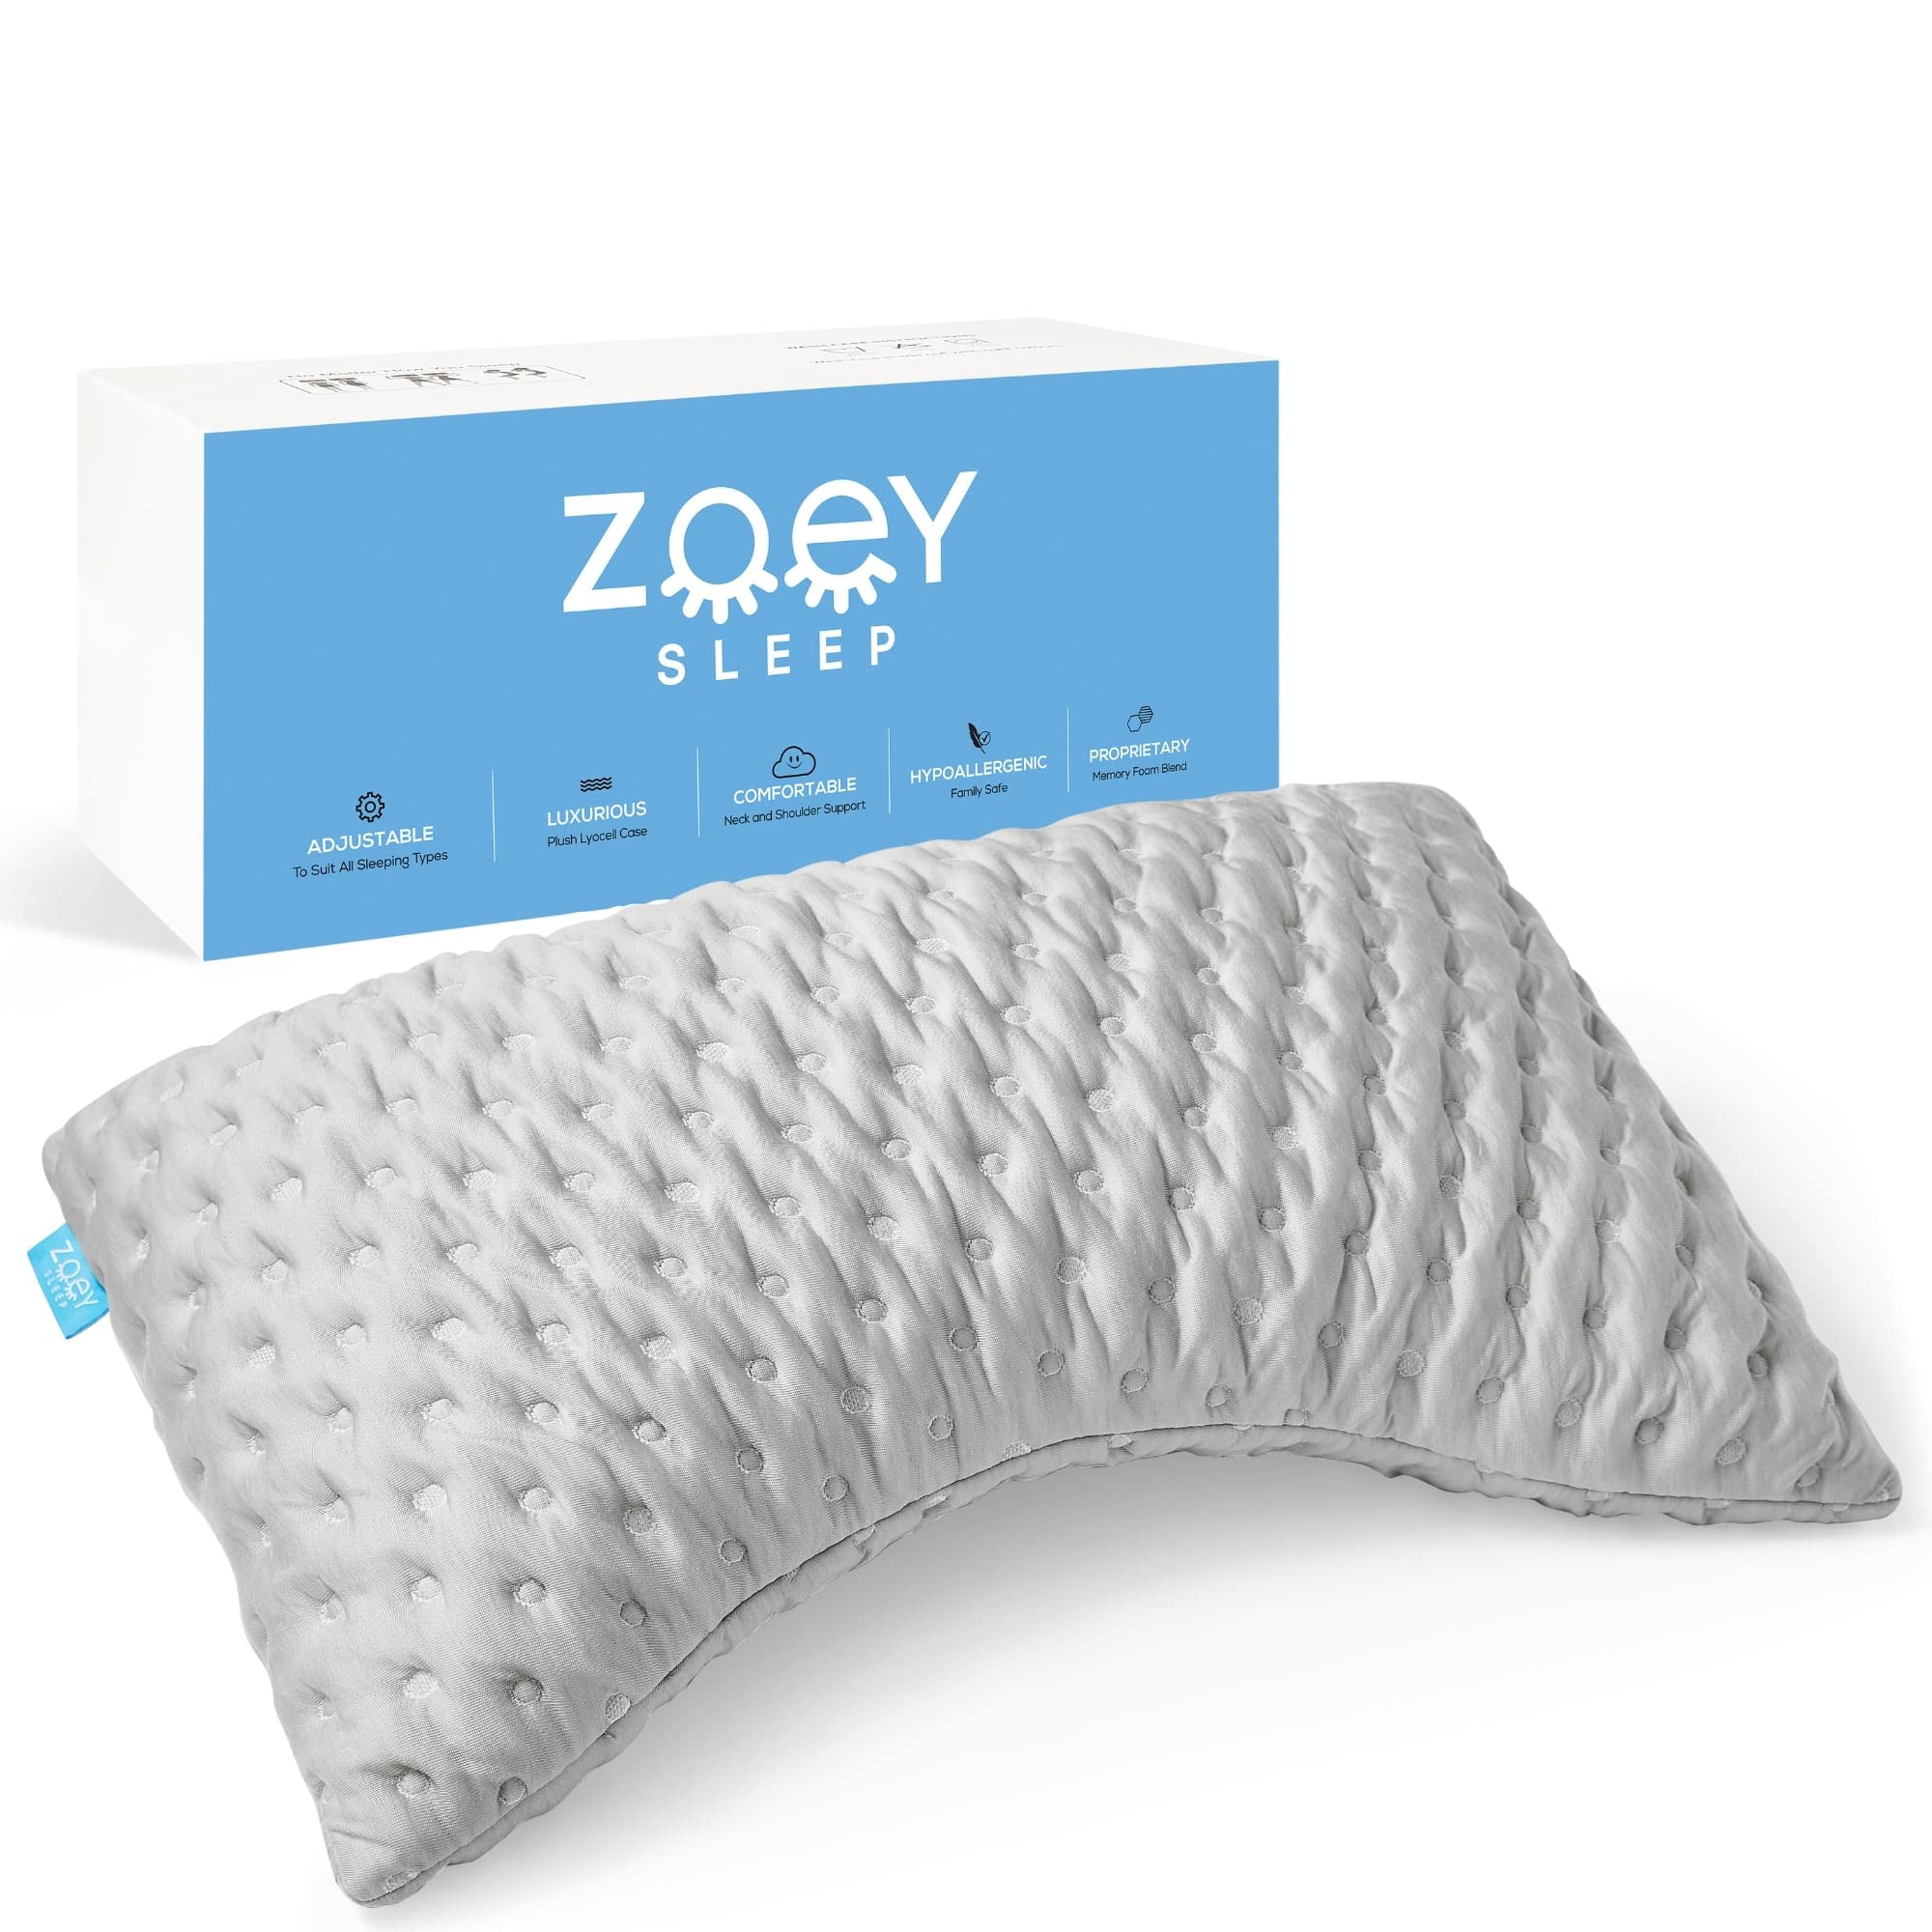 Zoey Sleep Almohada lateral para dormir - Almohadas de cama de espuma viscoelástica para dormir - Loft de apoyo 100% ajustable - Ayuda a aliviar el dolor de cuello y hombros